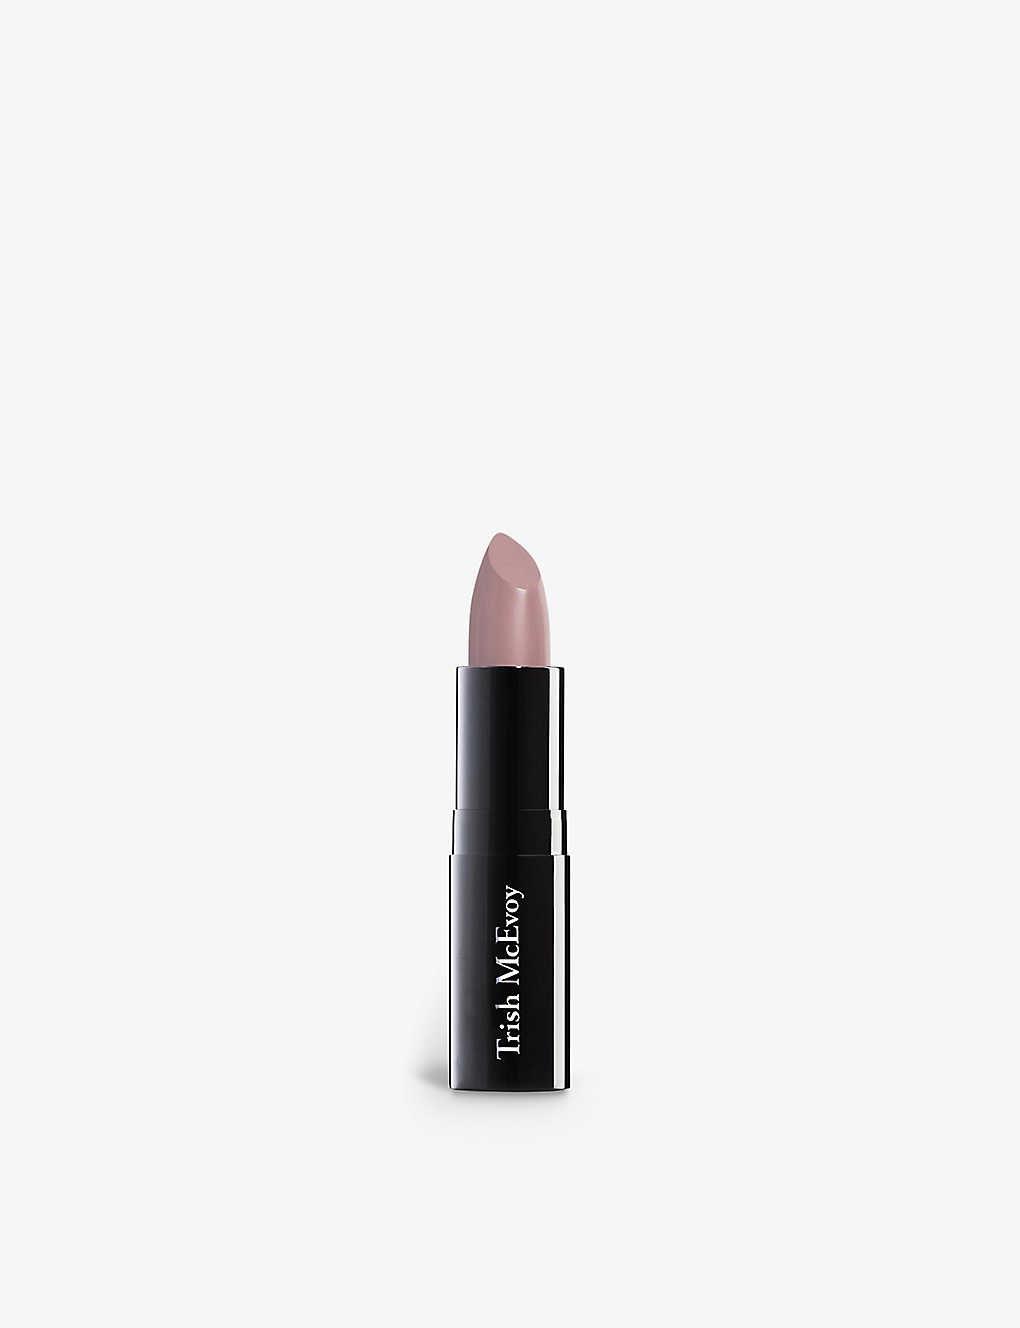 Trish Mcevoy Easy Nude 5 Lip Color Lipstick 3.5g